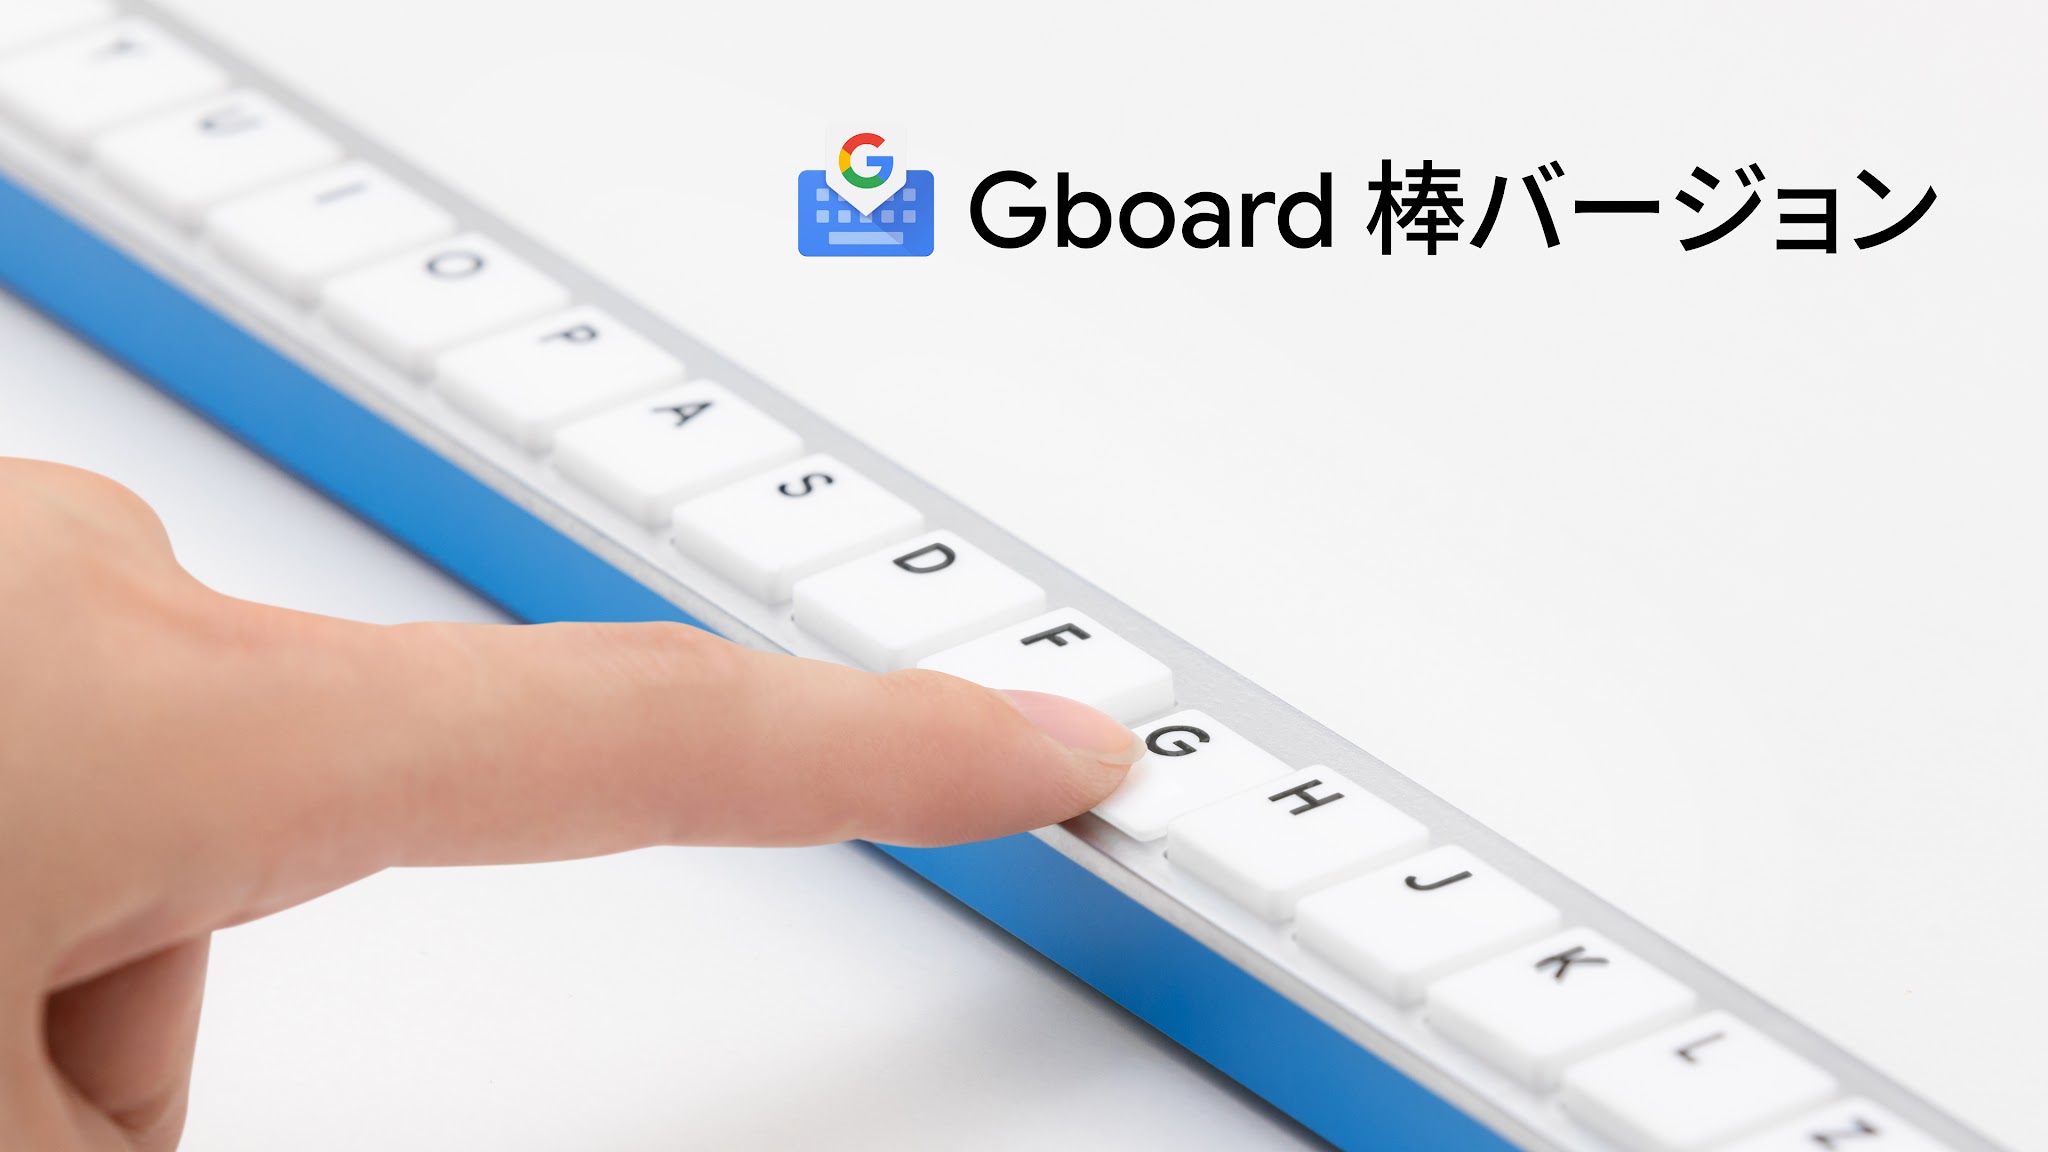 GBoard 棒バージョン: клавиатура-палка от Google Japan